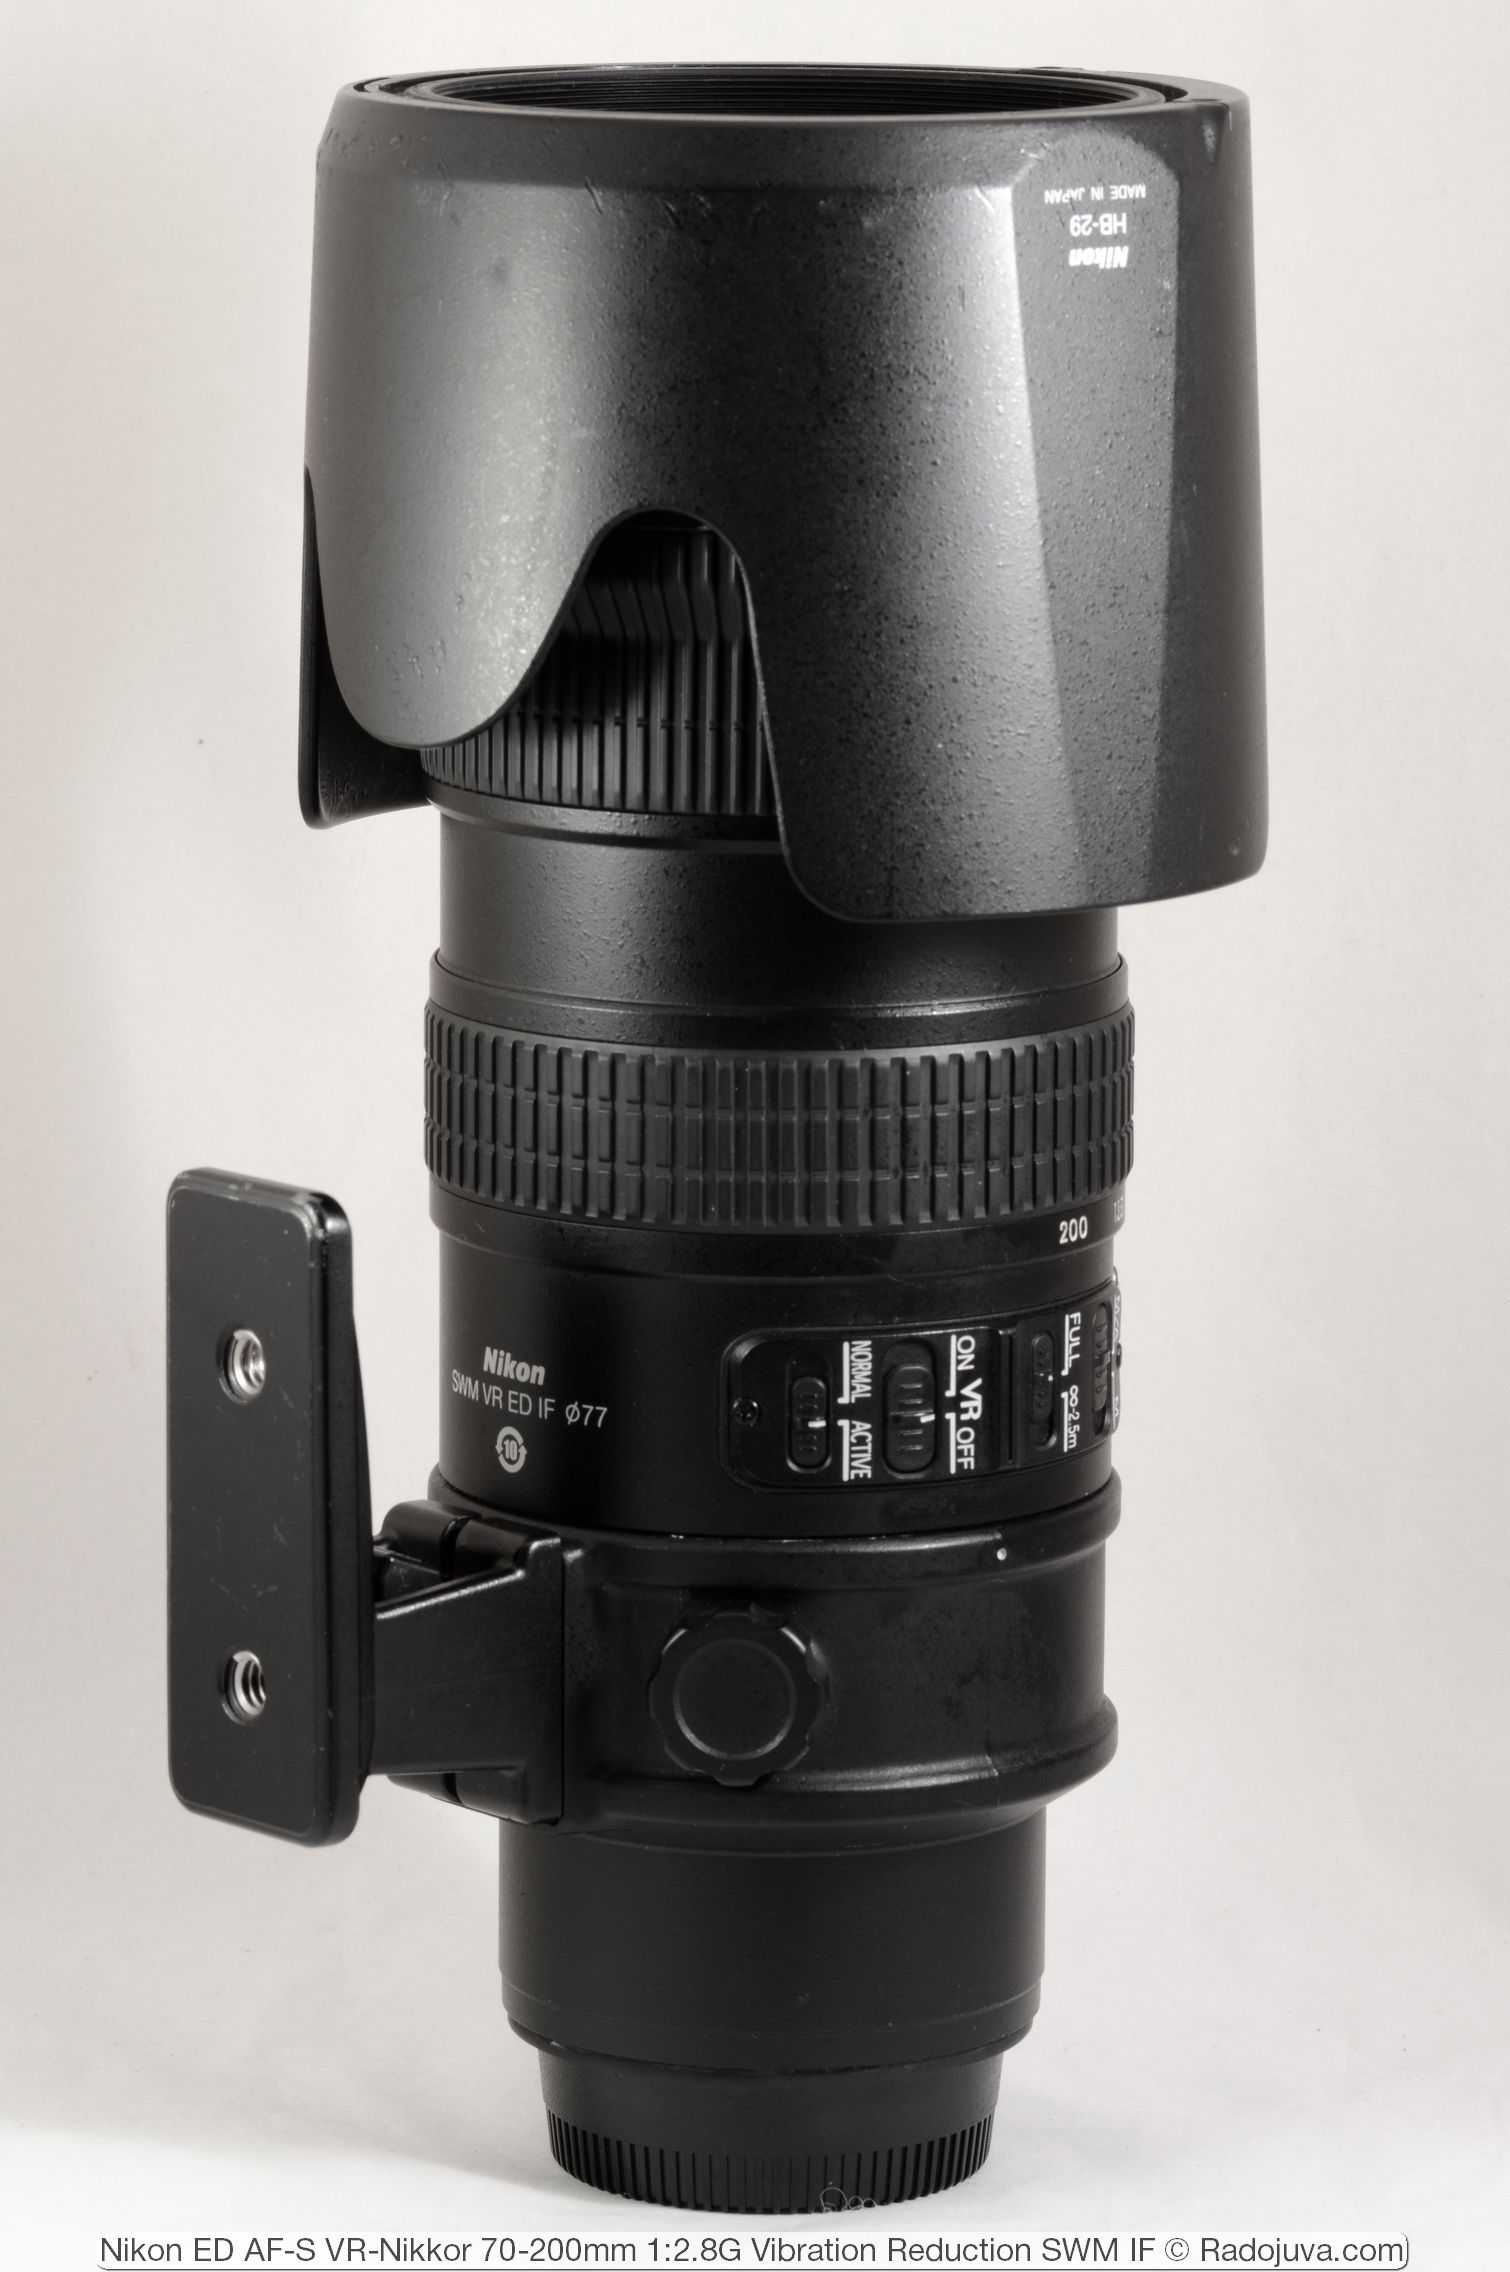 Nikon ED AF-S VR-Nikkor 70-200mm 1: 2.8G (vibratiereductie SWM IF)